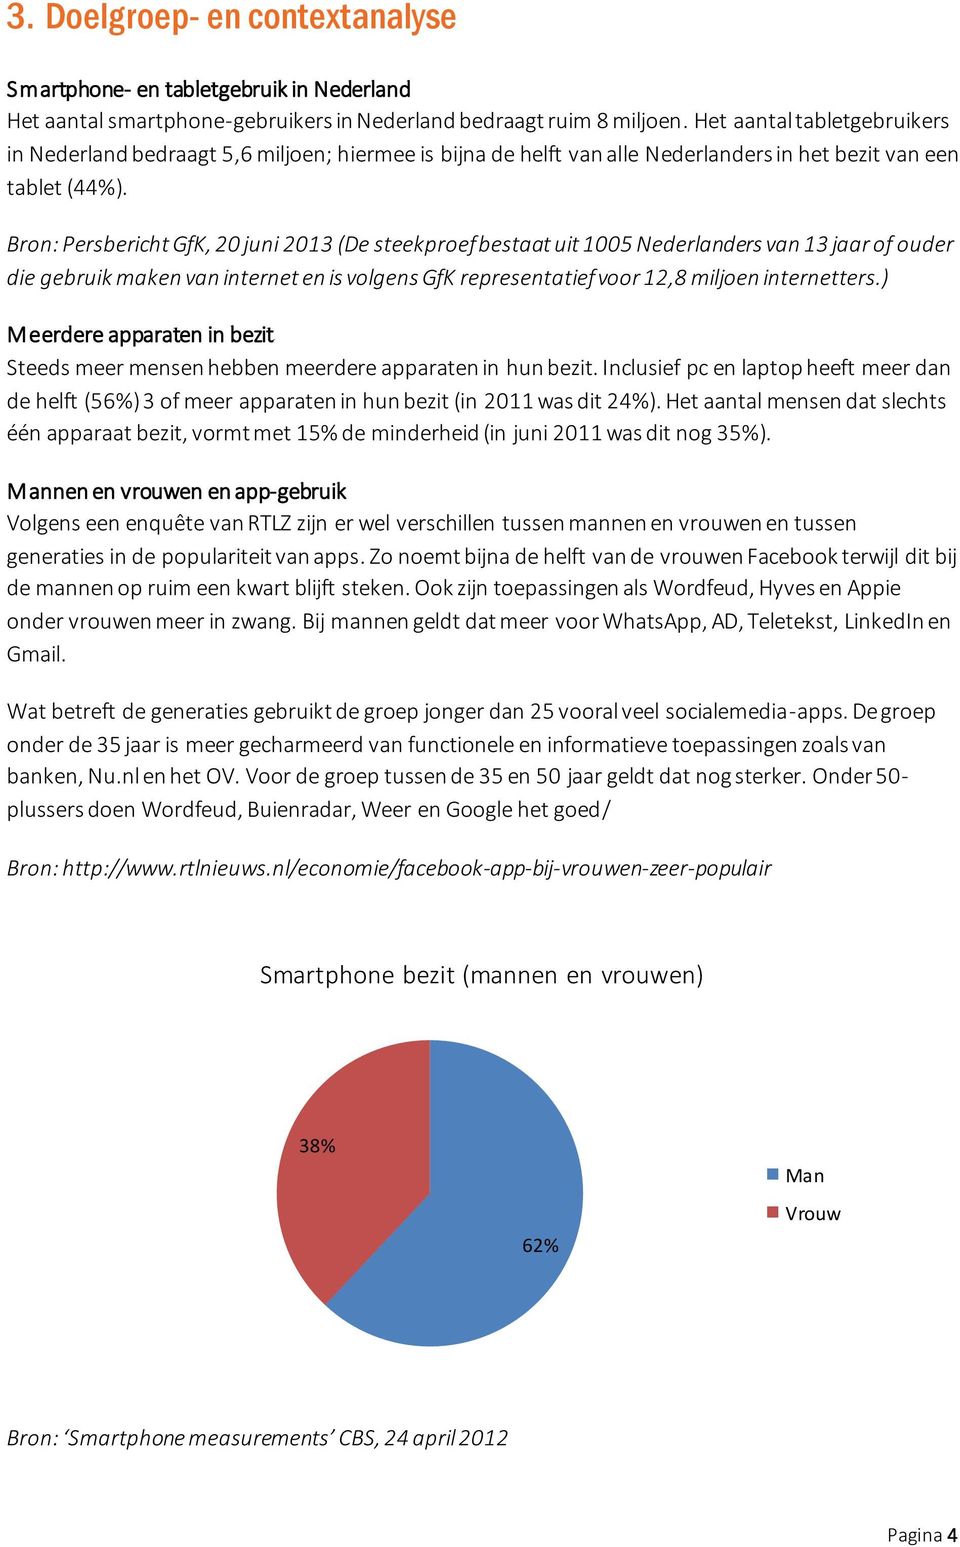 Bron: Persbericht GfK, 20 juni 2013 (De steekproef bestaat uit 1005 Nederlanders van 13 jaar of ouder die gebruik maken van internet en is volgens GfK representatief voor 12,8 miljoen internetters.